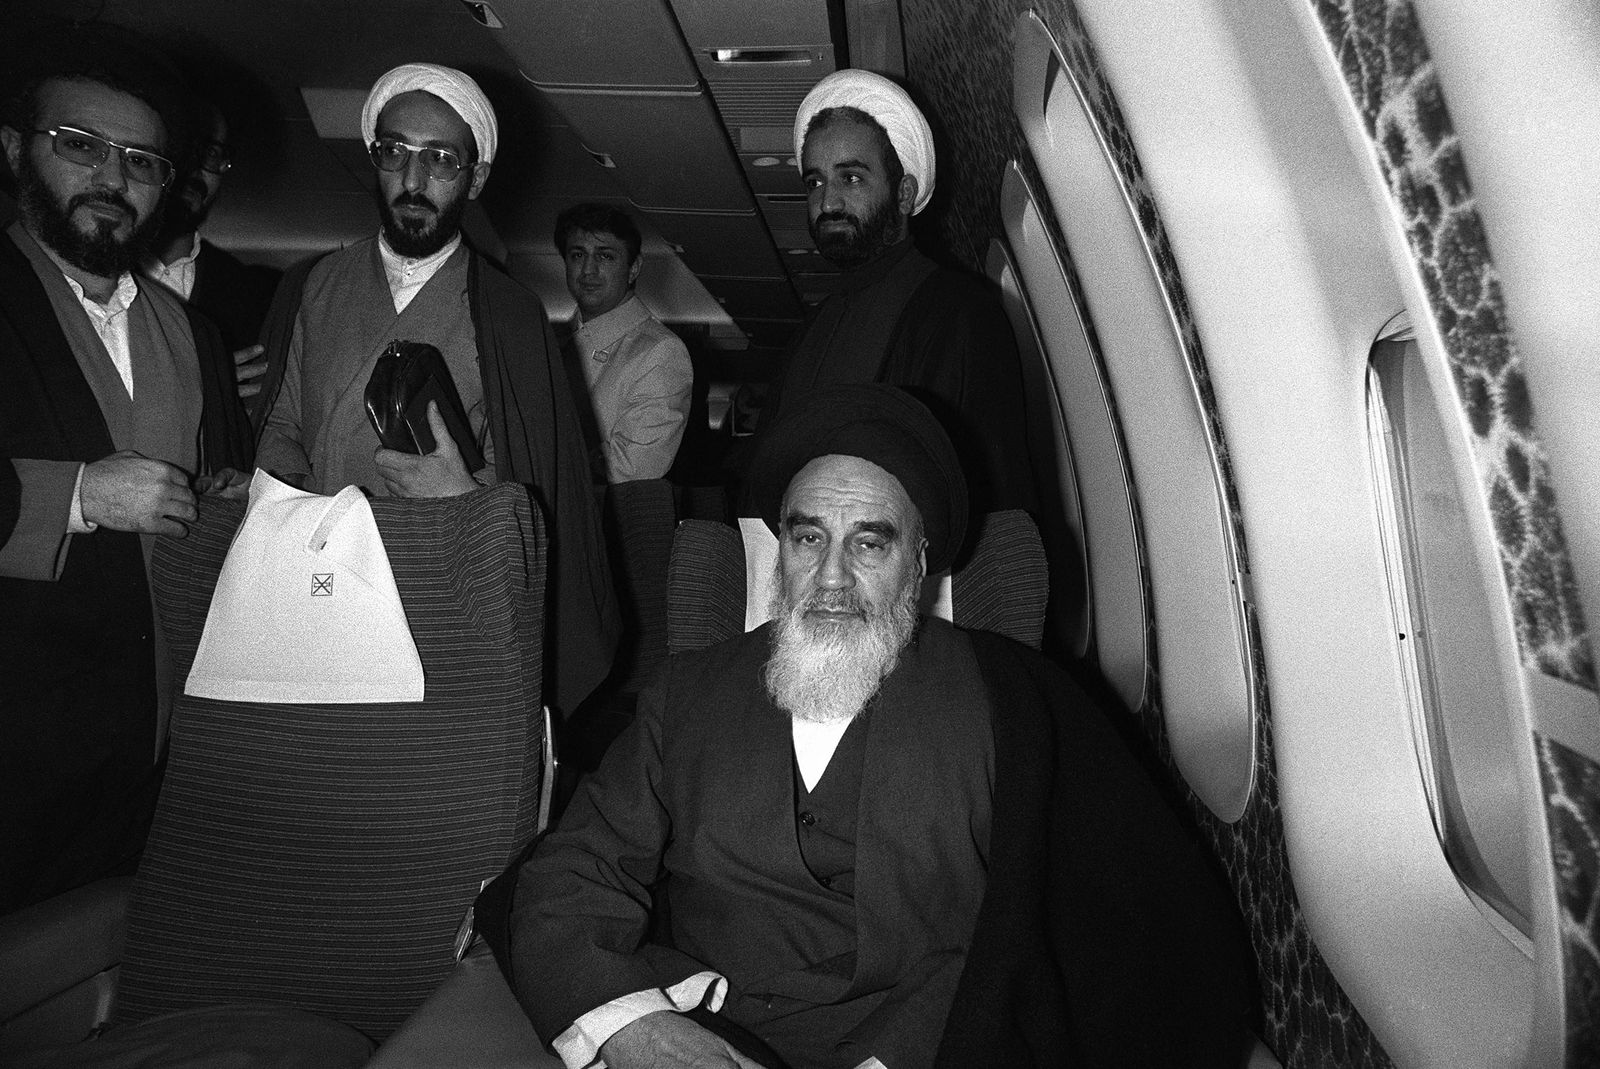 المرشد الإيراني السابق روح الله الخميني مستقلاً طائرة الخطوط الجوية الفرنسية (بوينغ 747) التي أعادته من منفاه في باريس إلى إيران- 1 فبراير 1979 - AFP